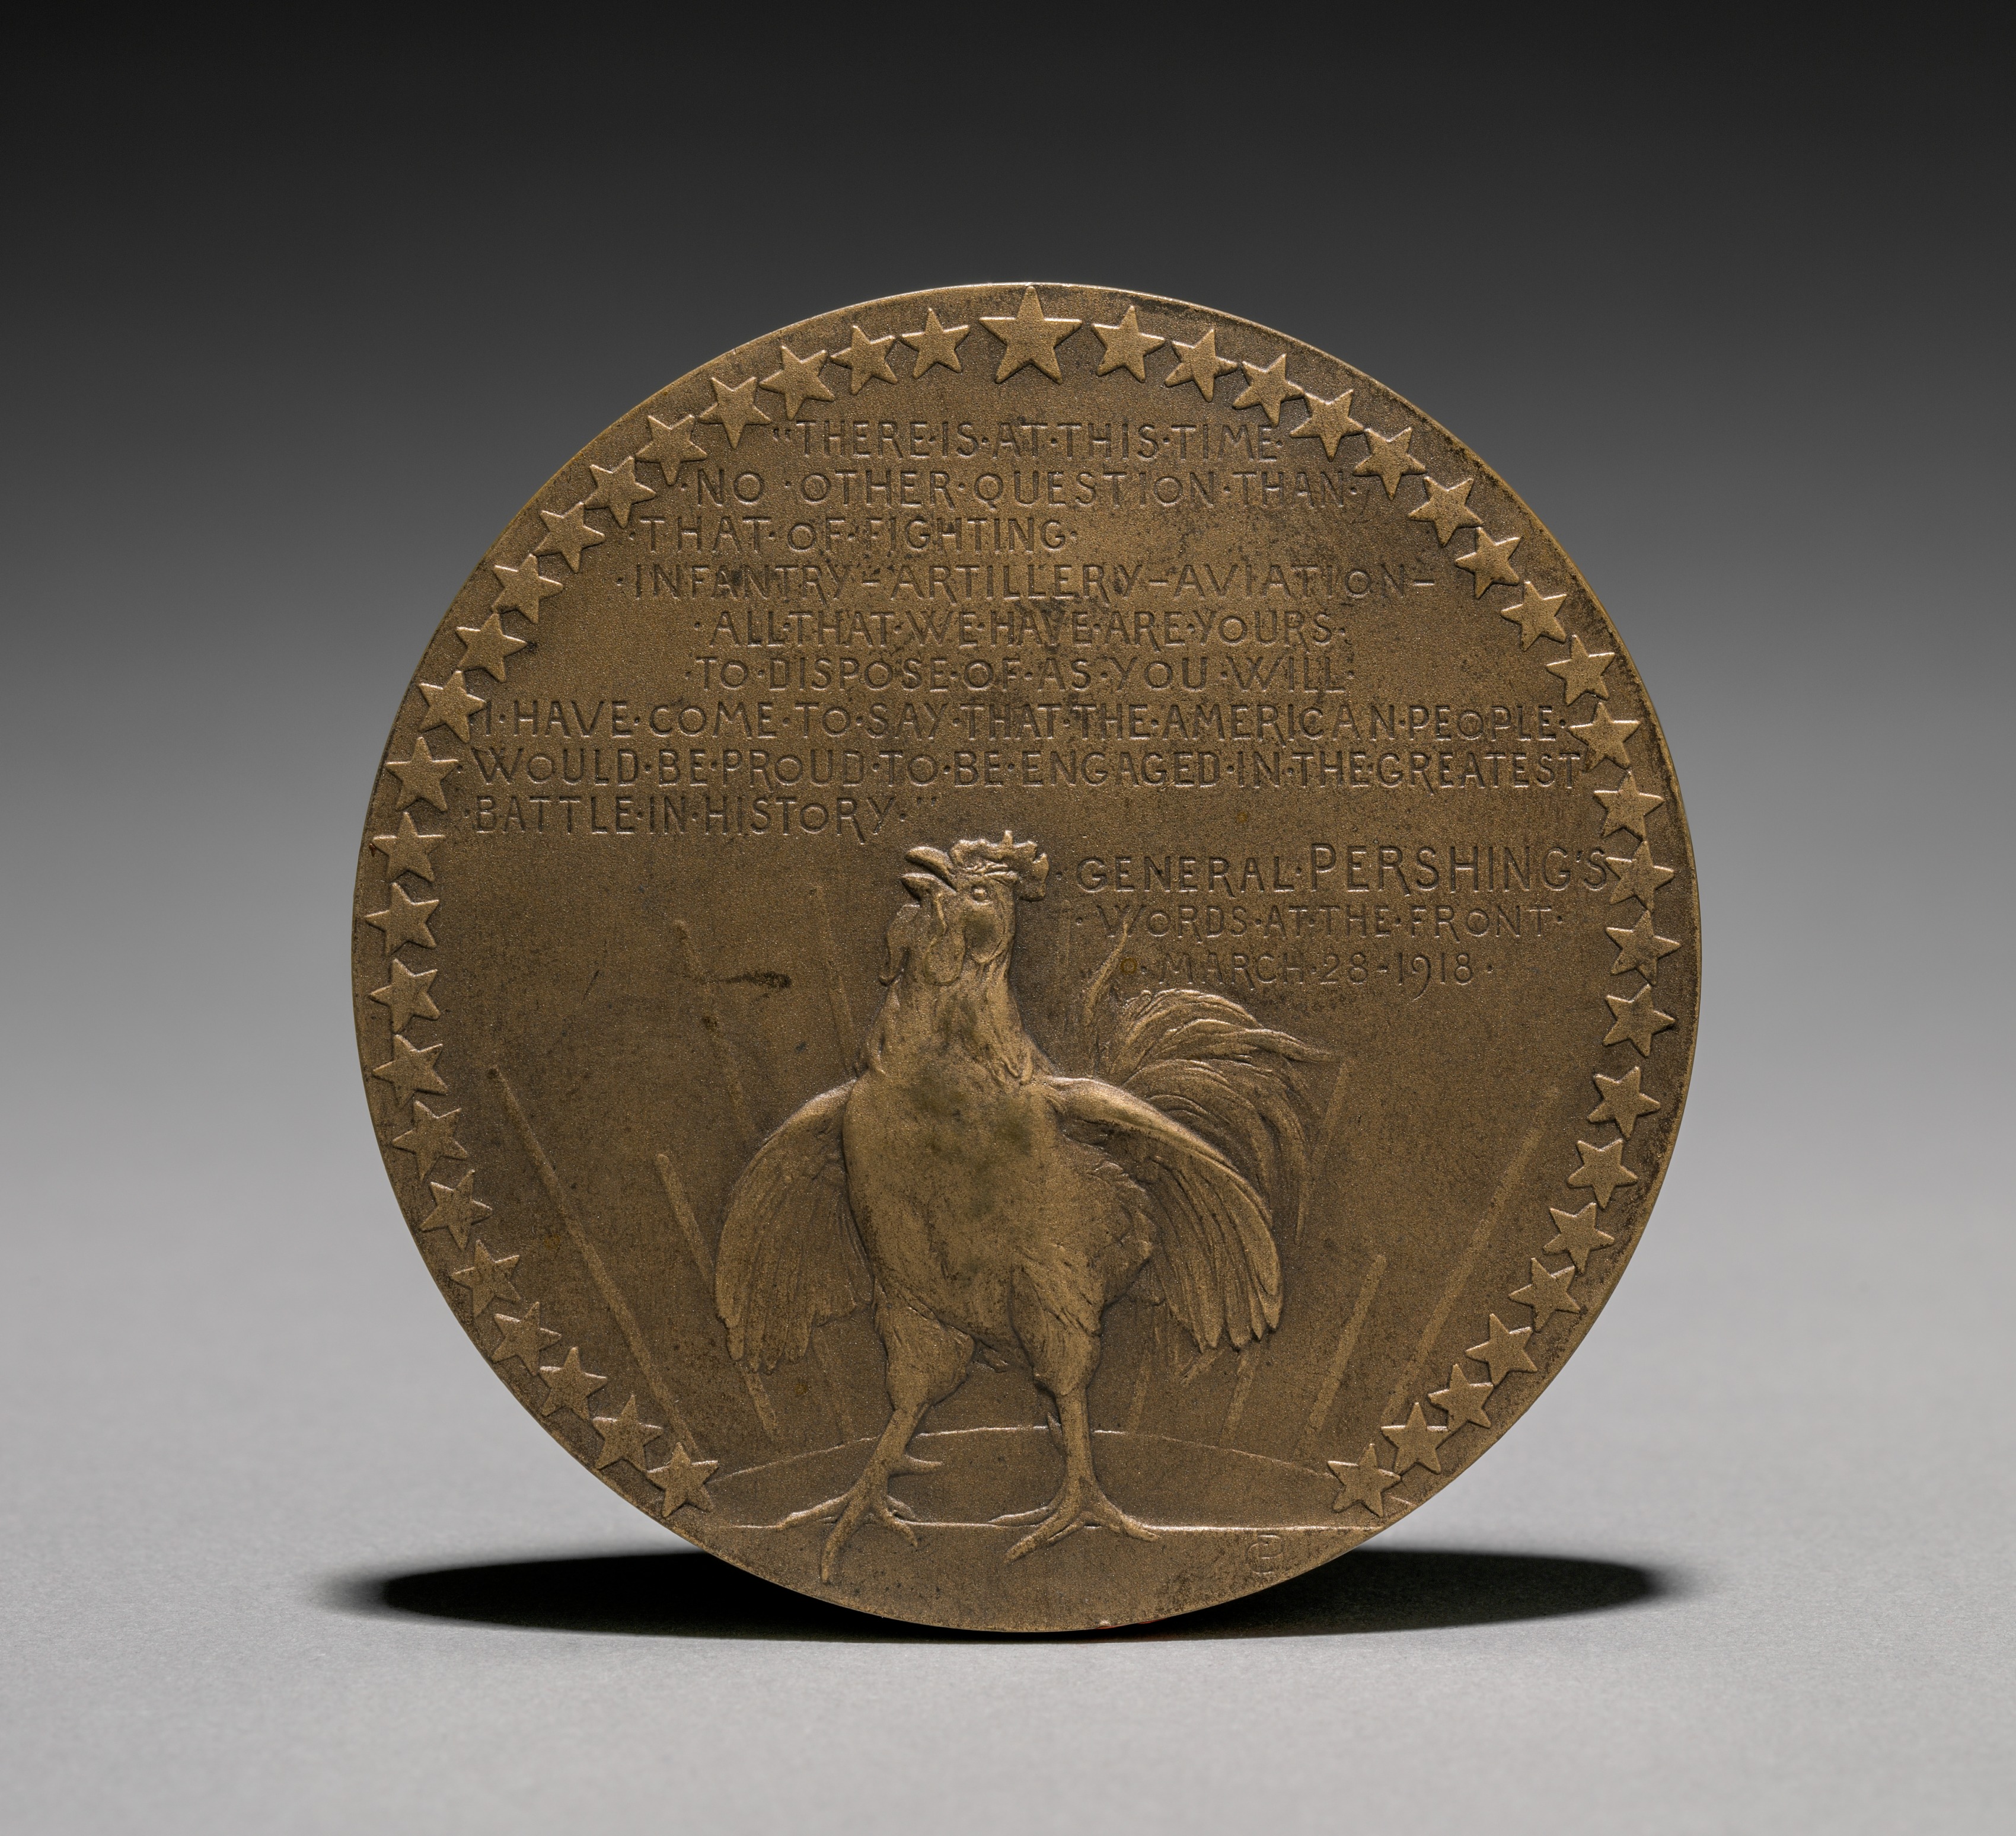 Pershing Medal (reverse)